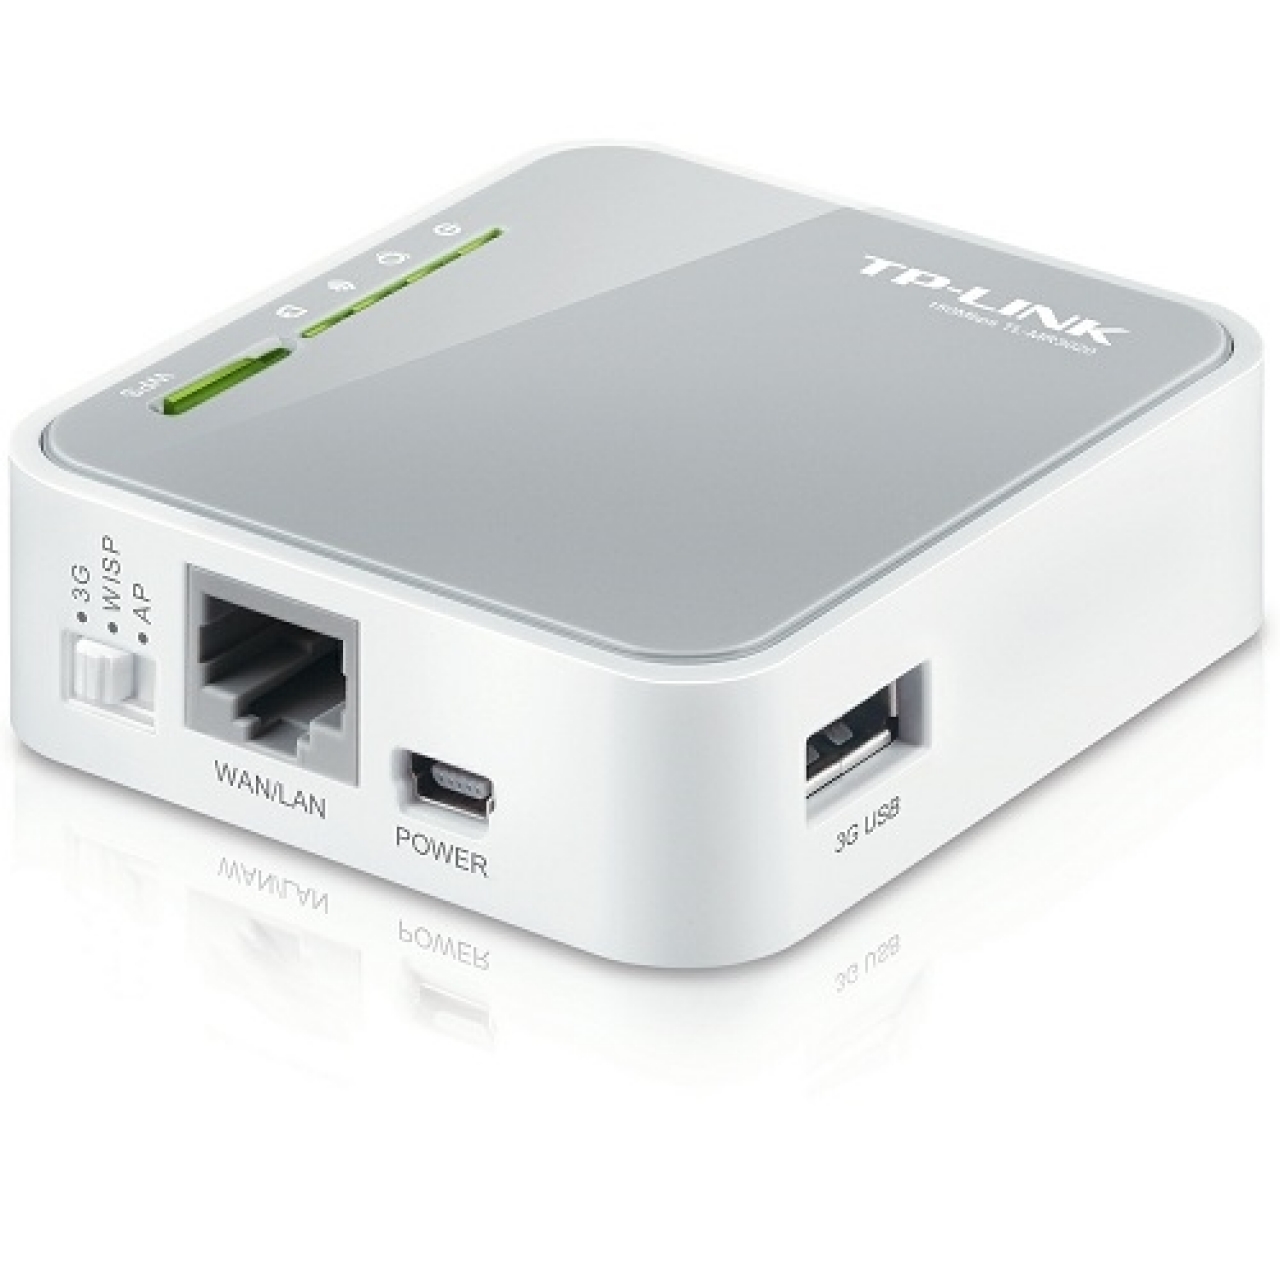 TP-LINK TL-MR3020 300mbps N300 2.4GHZ EV Ofis Tipi 3G-4G Router